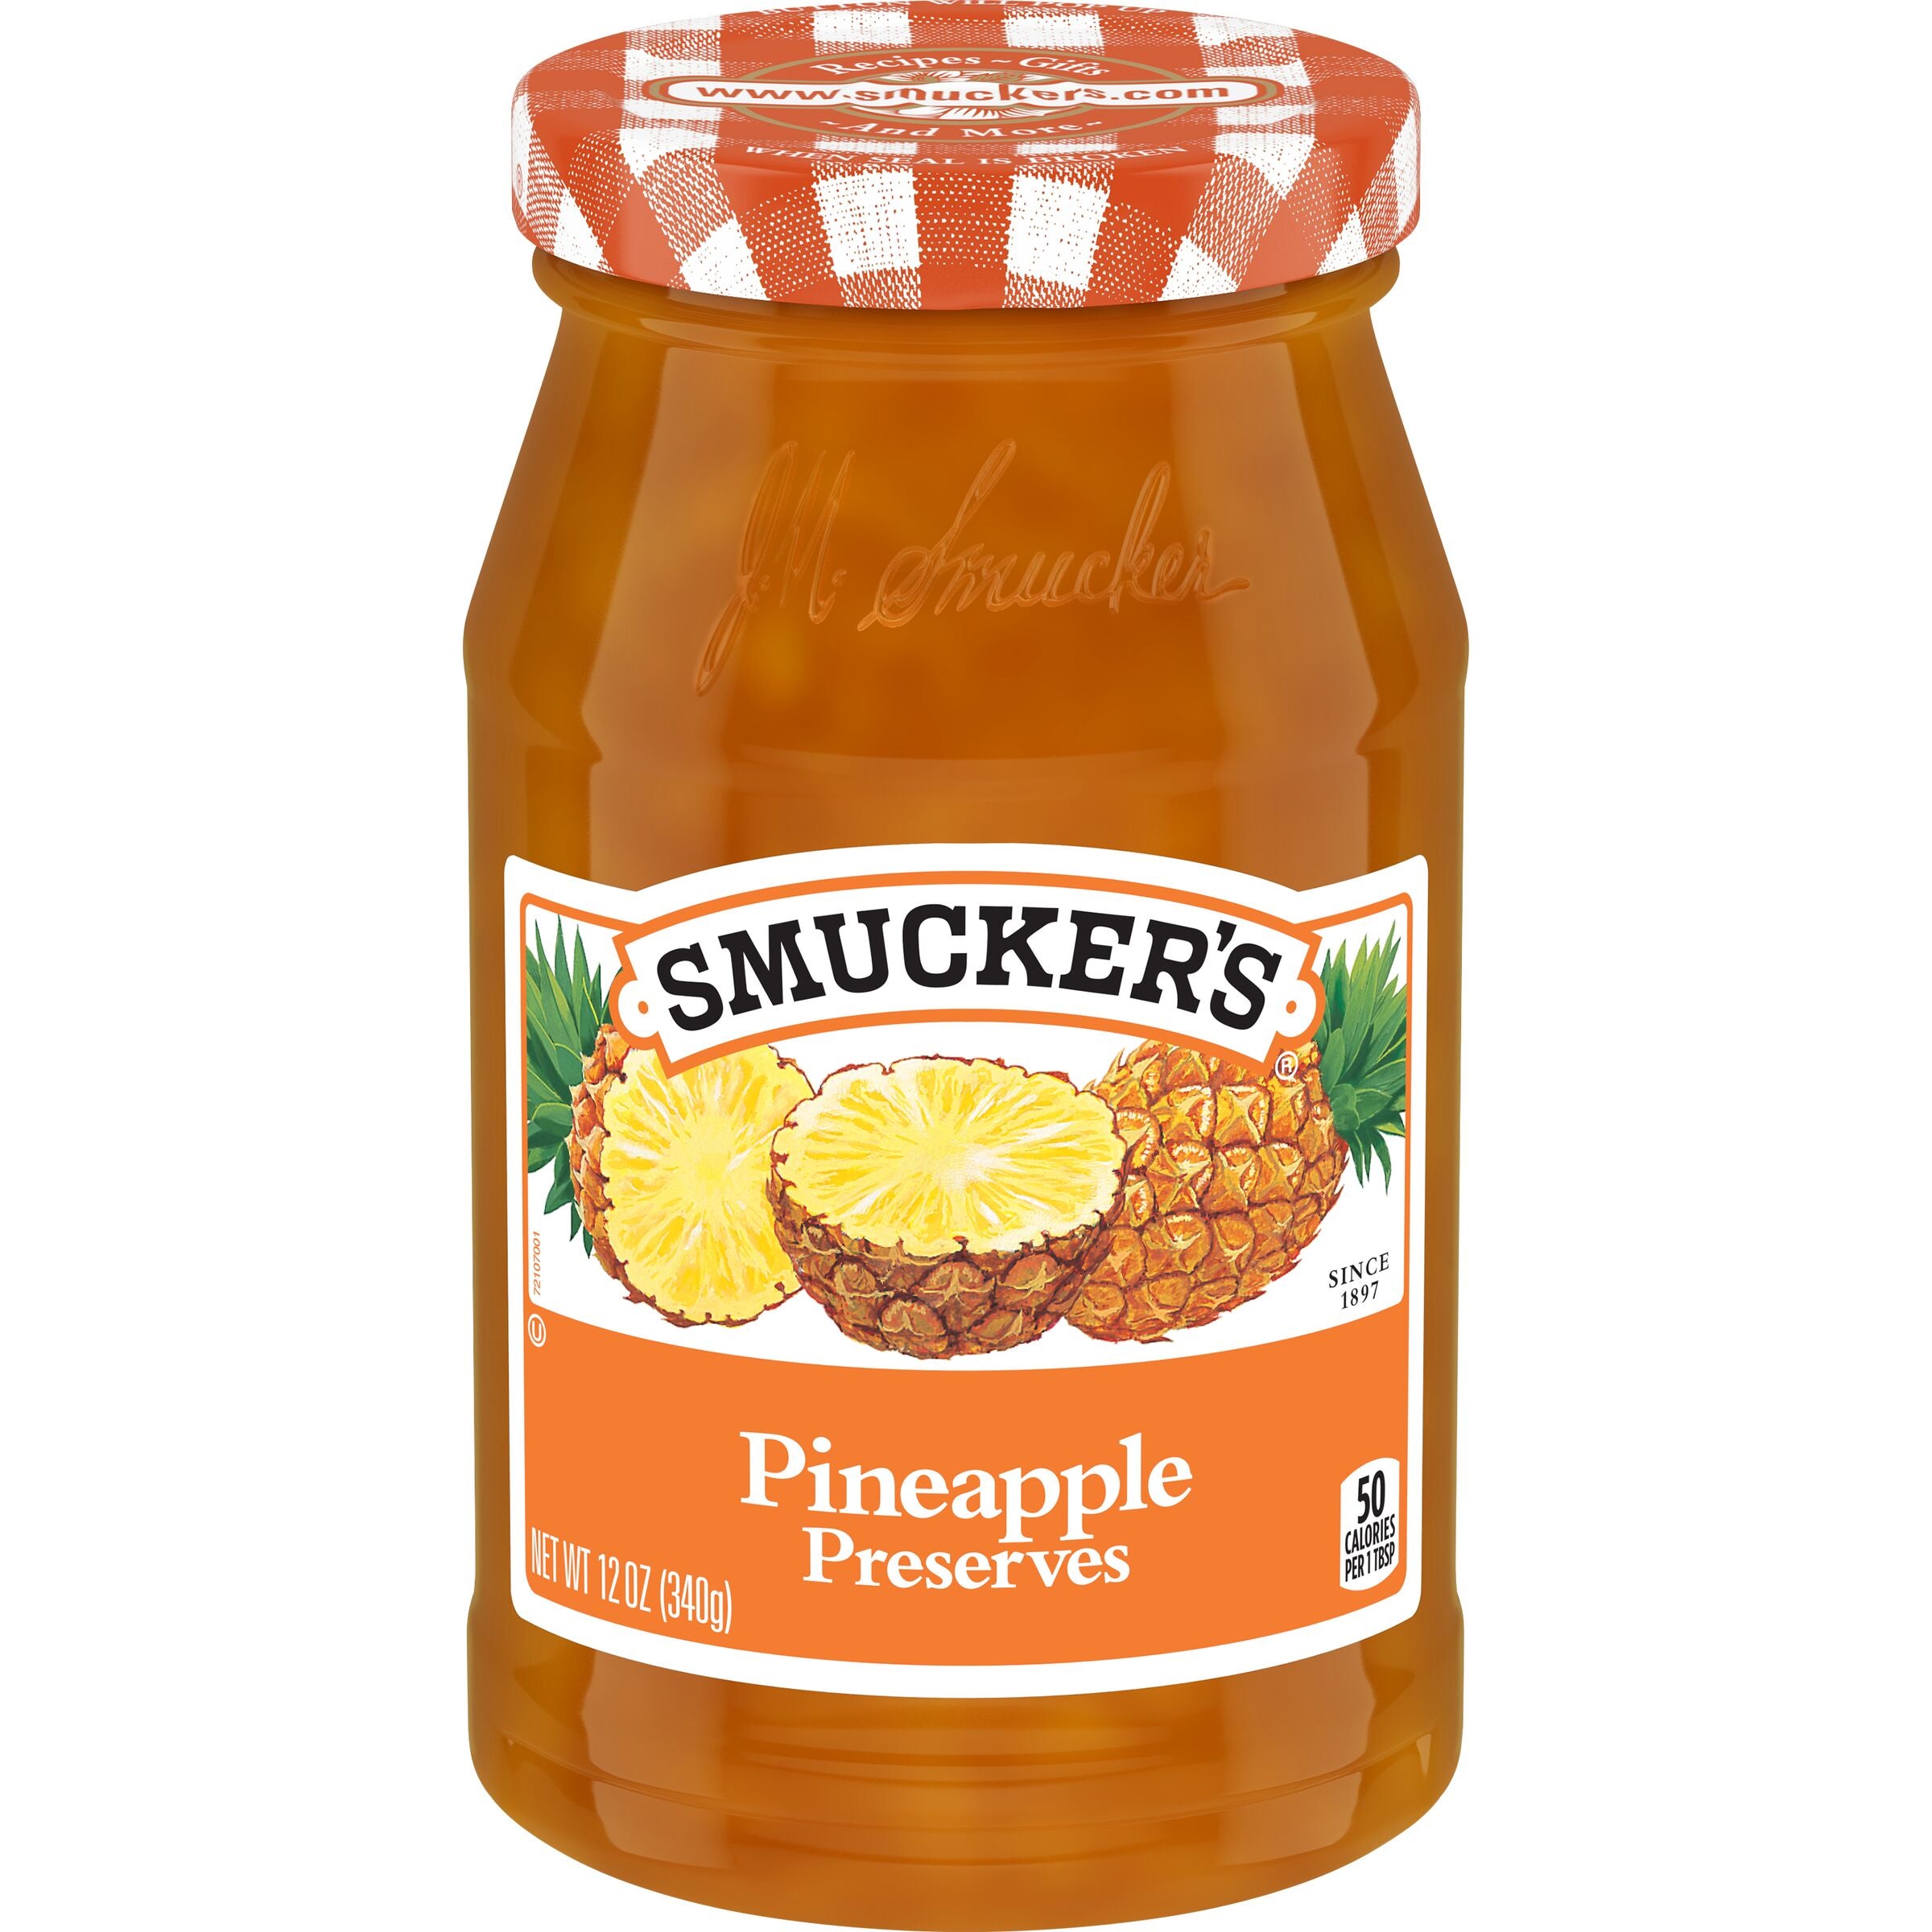 Smucker's Pineapple Preserves